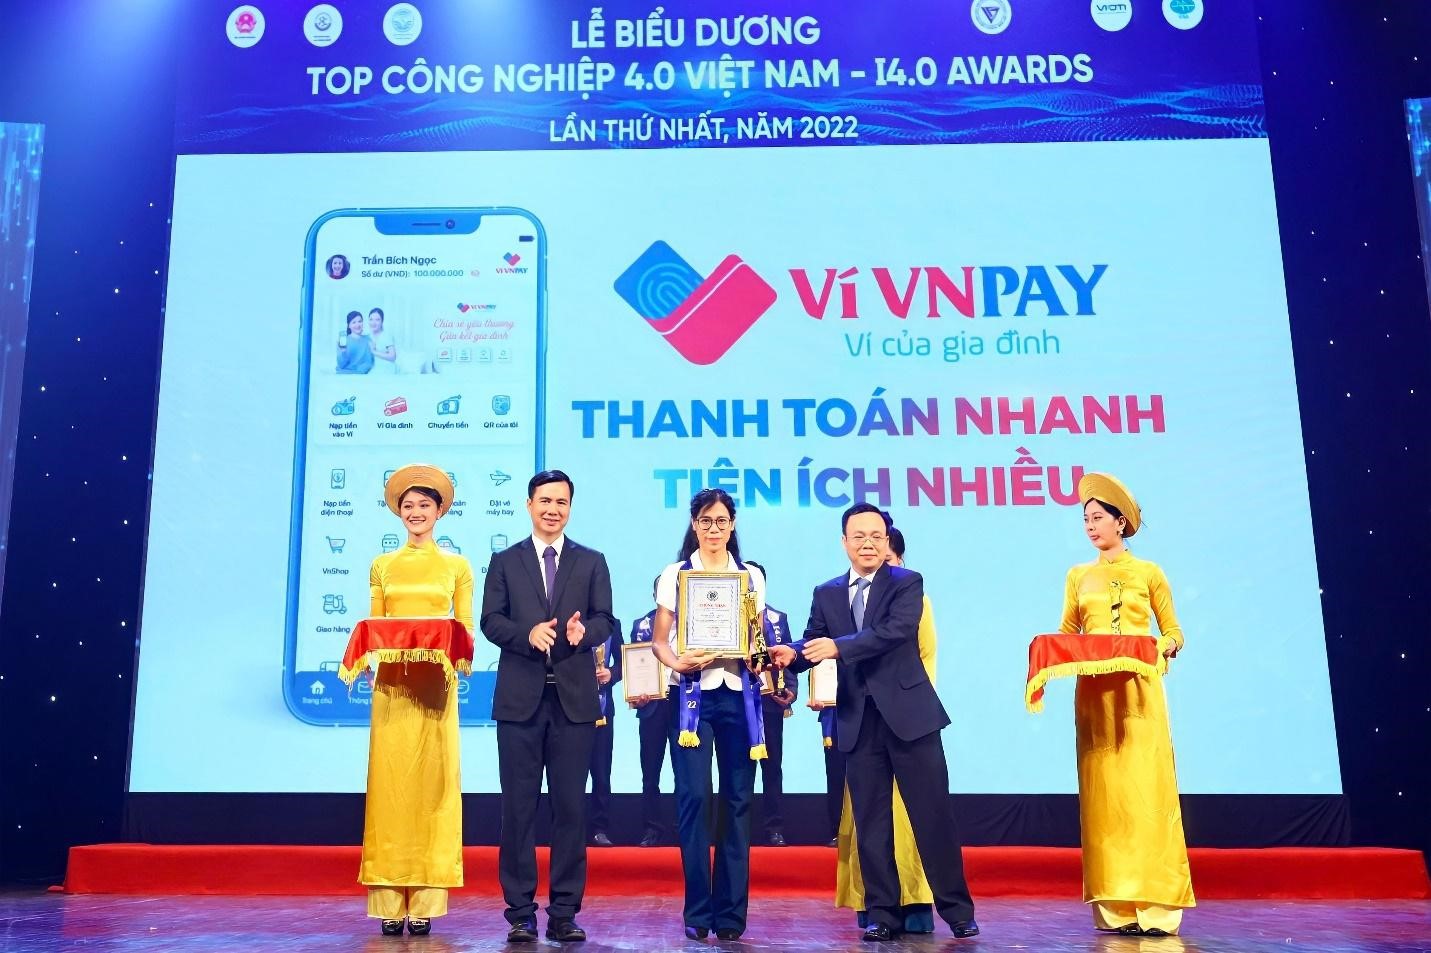 Bà Nguyễn Thị Thu Hương nhận Giải thưởng Top Công nghệ 4.0 Việt Nam 2022 (Ảnh: VNPAY)